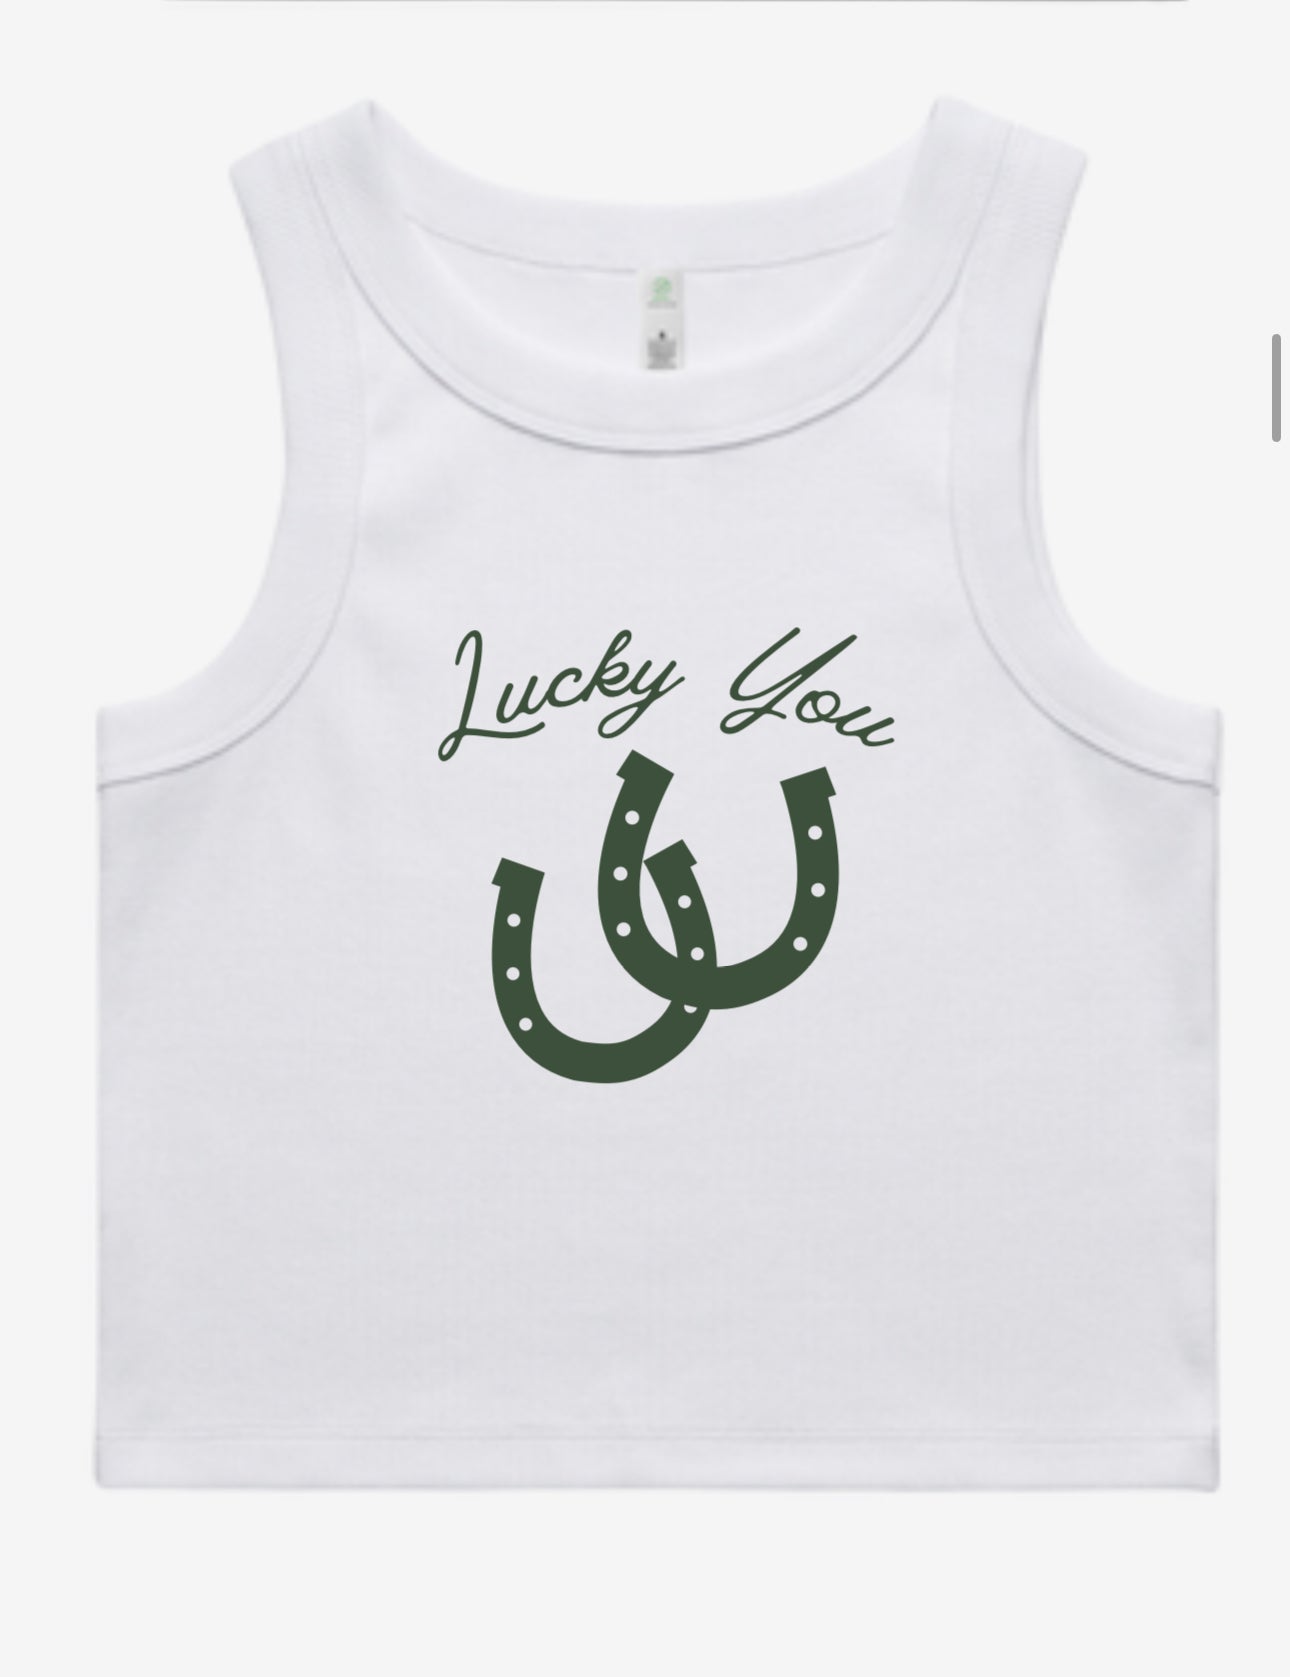 “Lucky You” tank